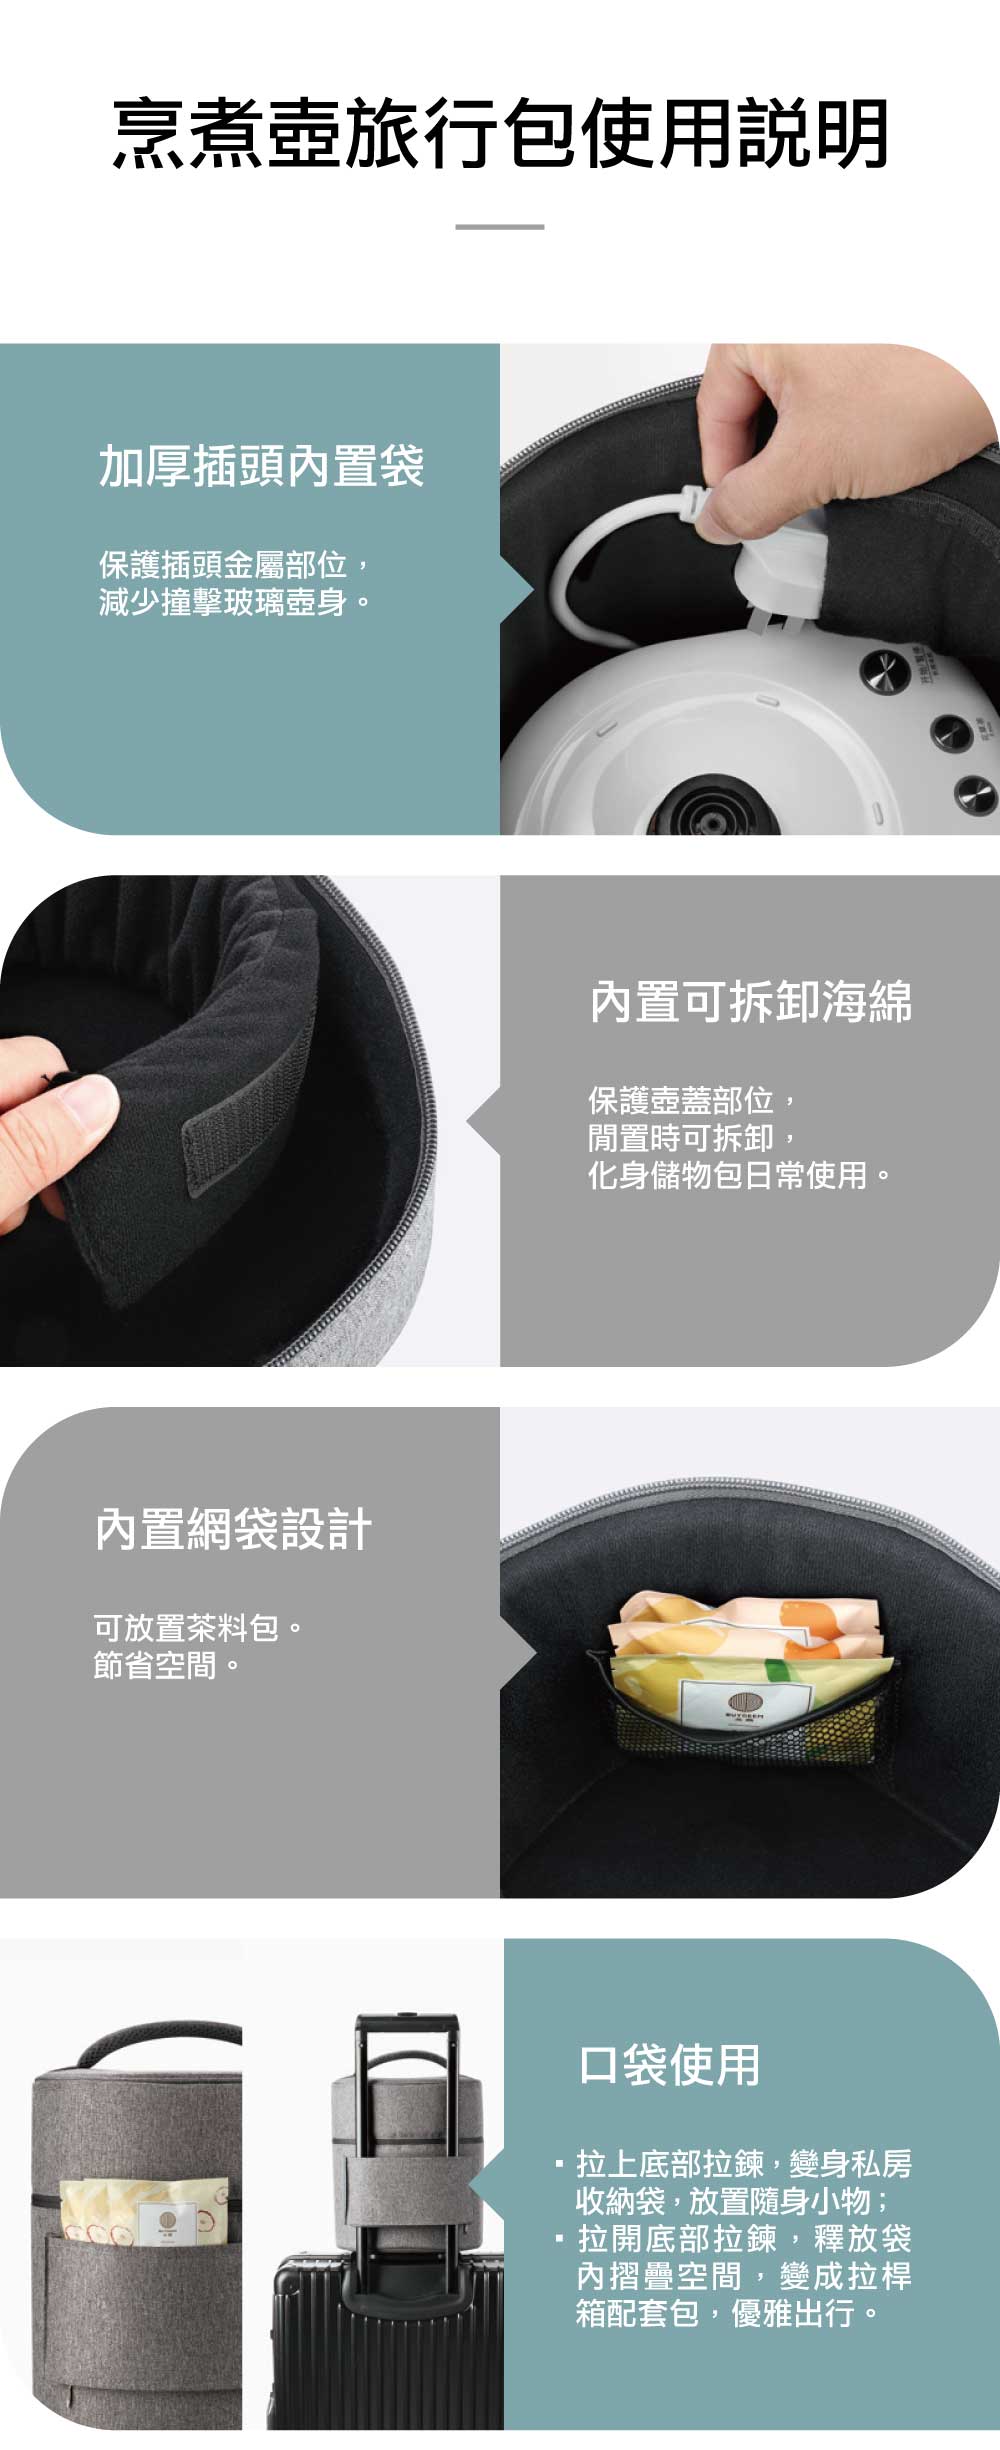 北鼎烹煮壺旅行包使用說明